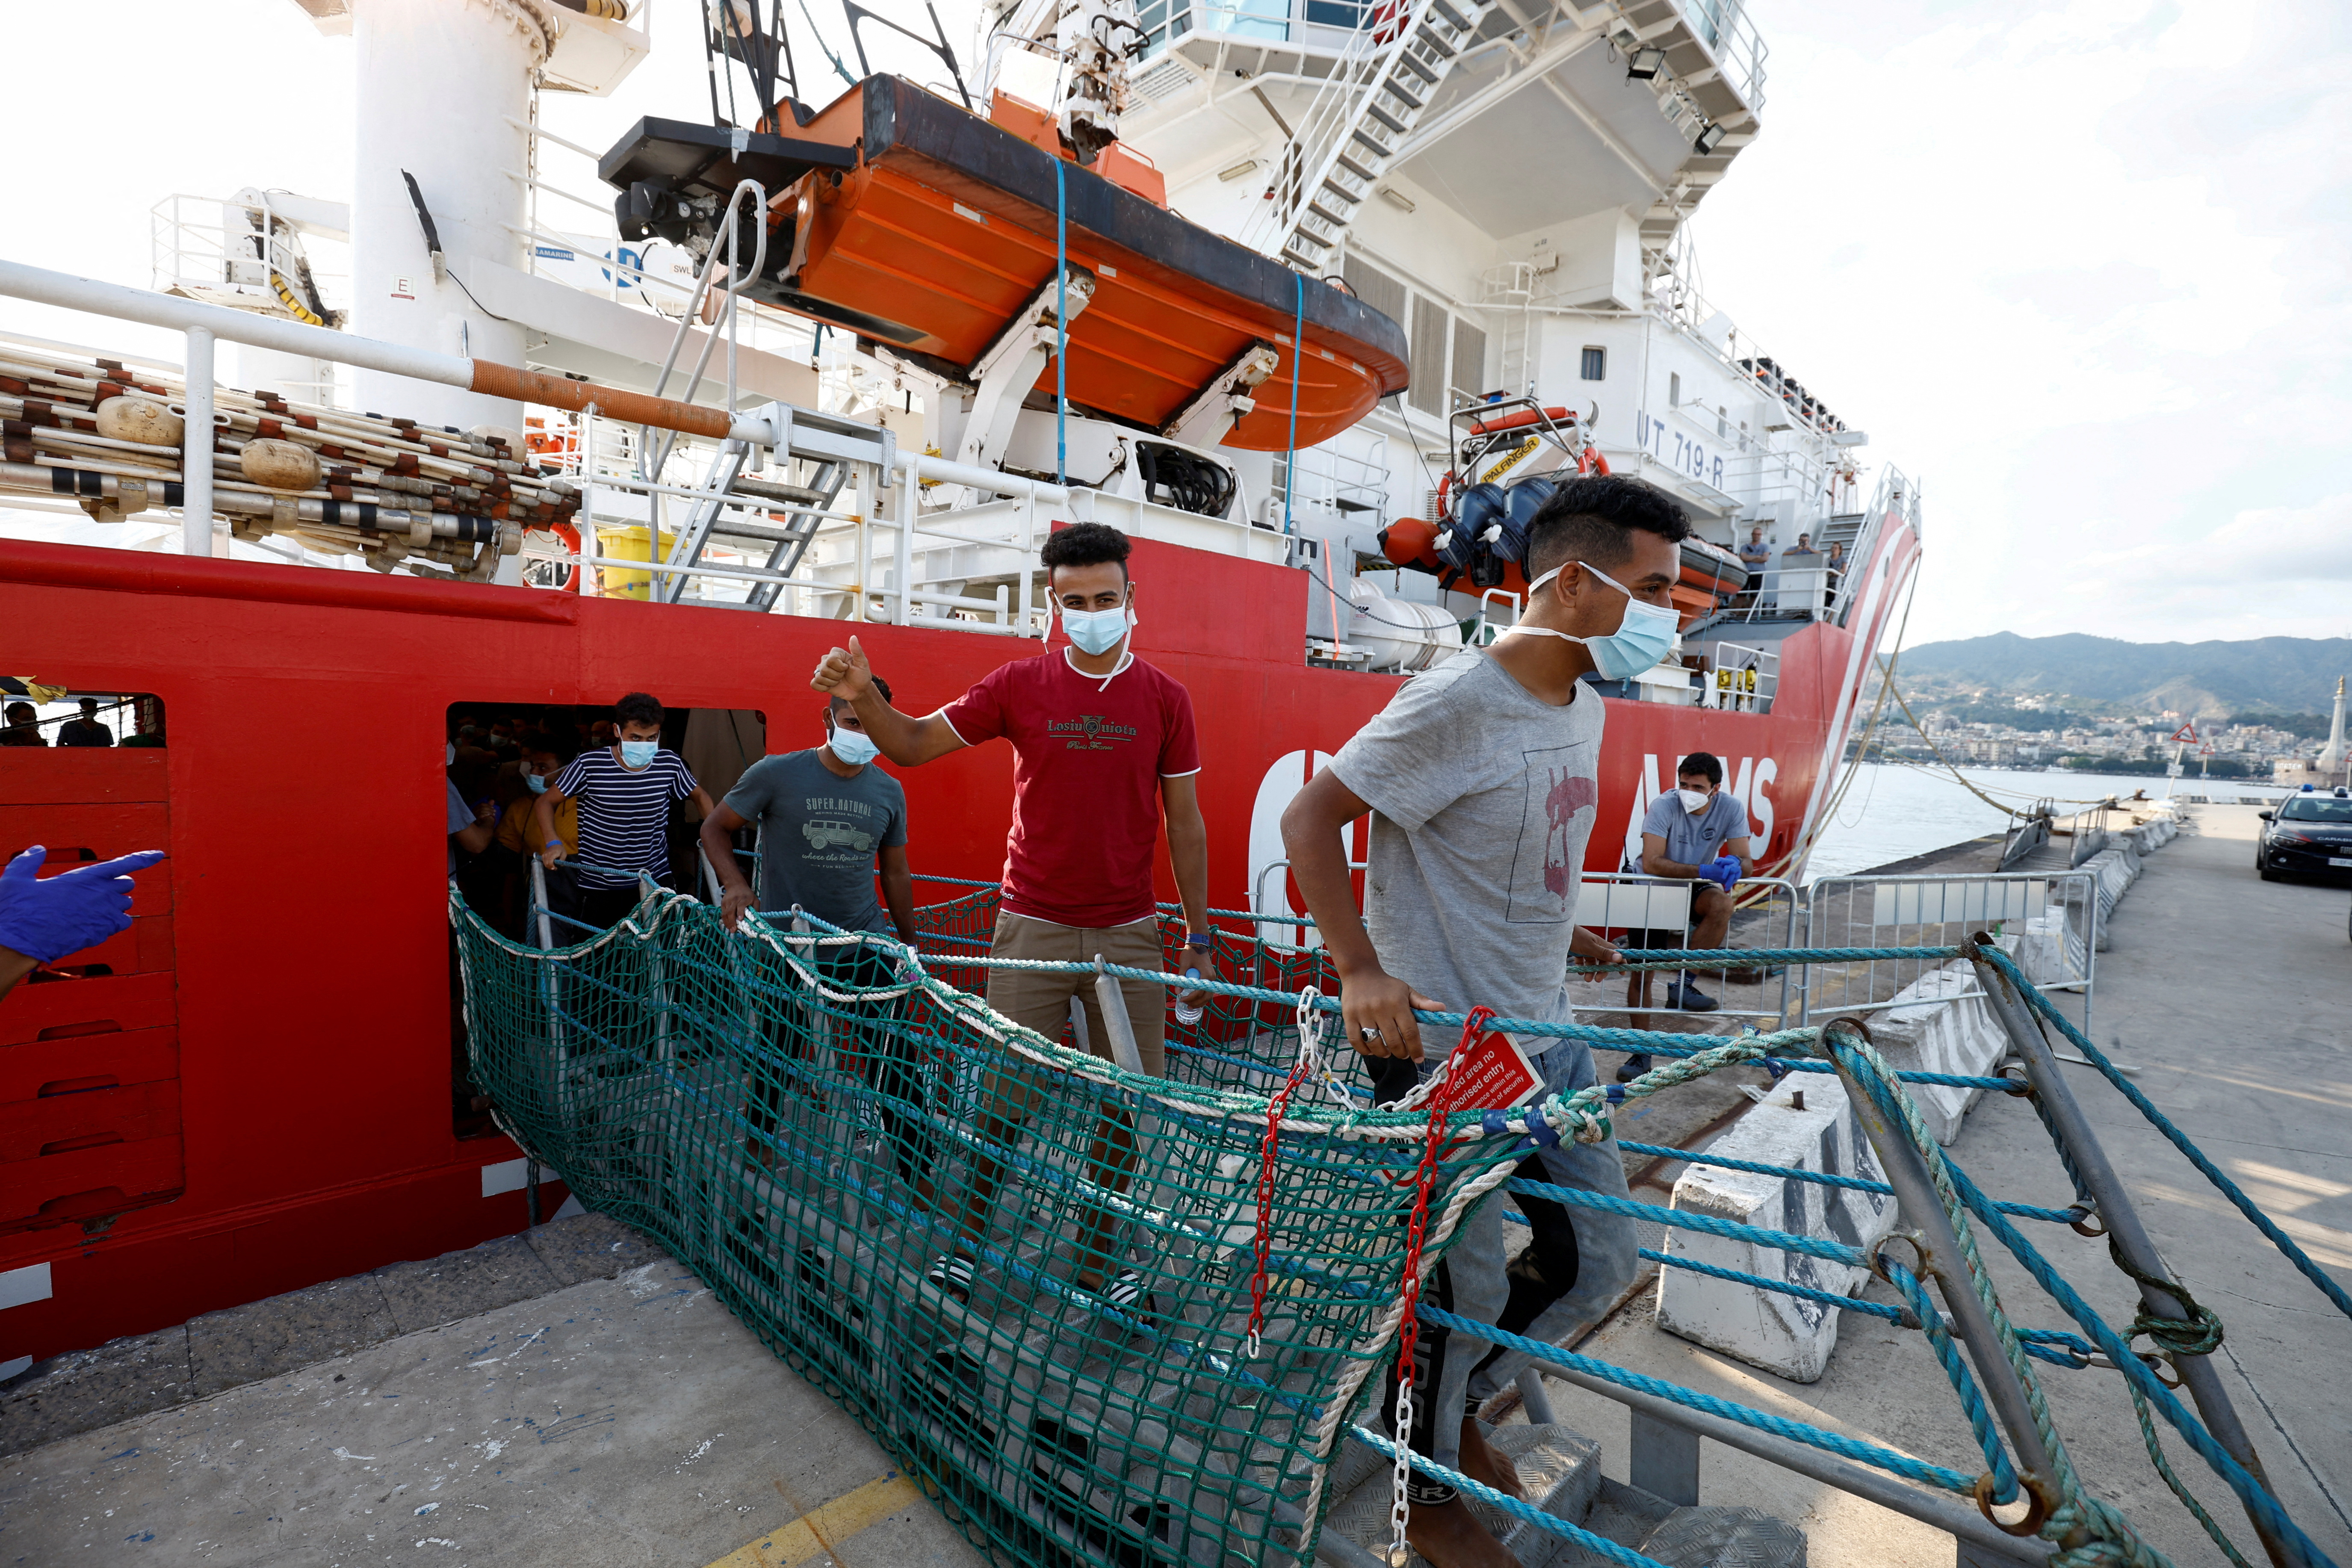 L’Italia trattiene una nave di beneficenza per migranti dopo molteplici salvataggi